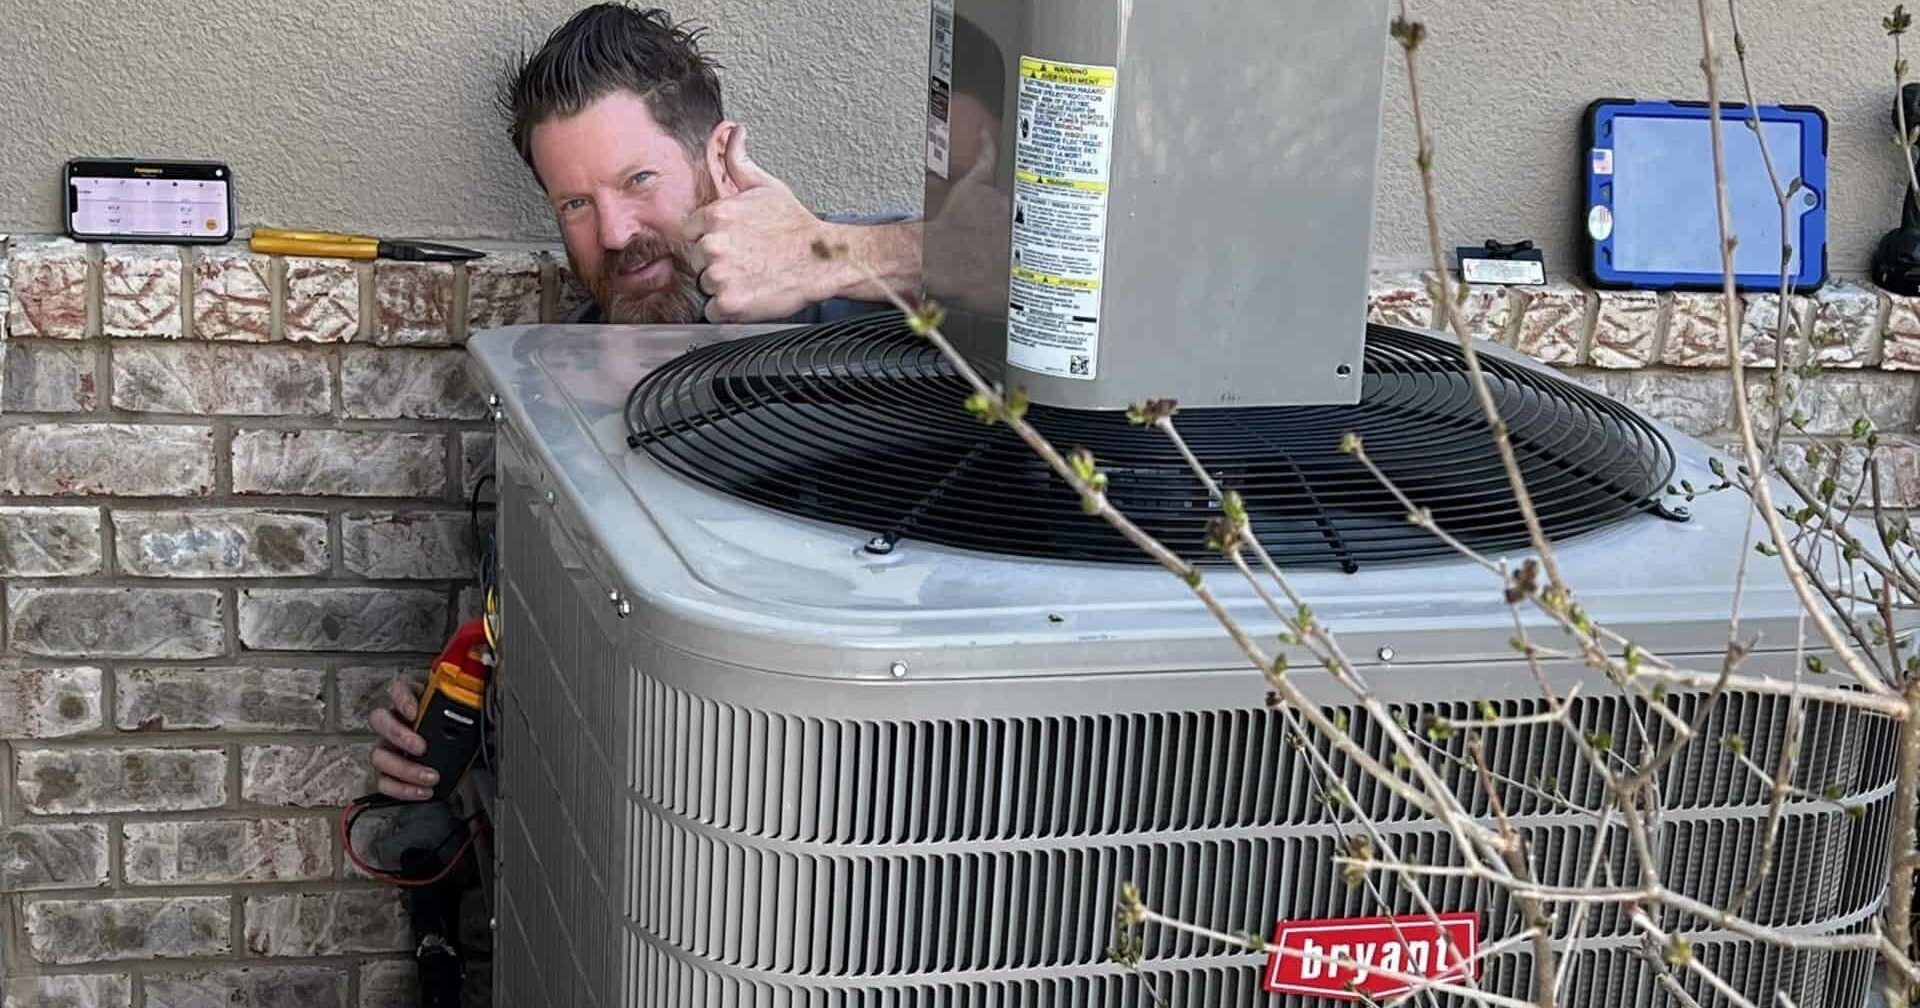 Austin Plumbing, Heating & Air Tech Repairing a Central AC